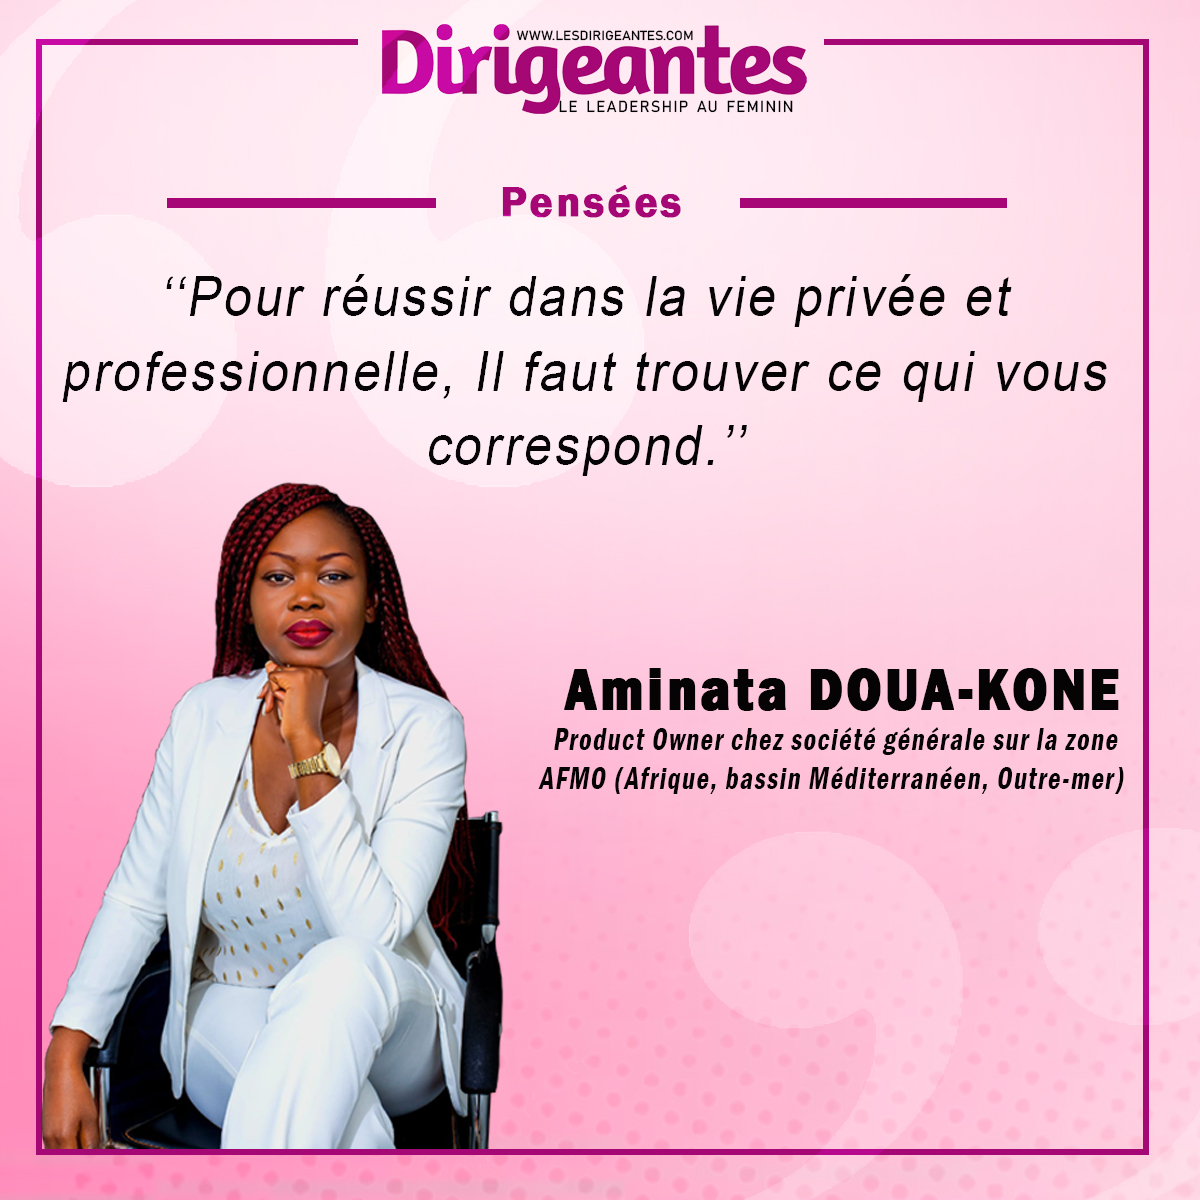  Aminata DOUA-KONE, Product Owner chez société générale sur la zone AFMO (Afrique, bassin Méditerranéen, Outre-mer)